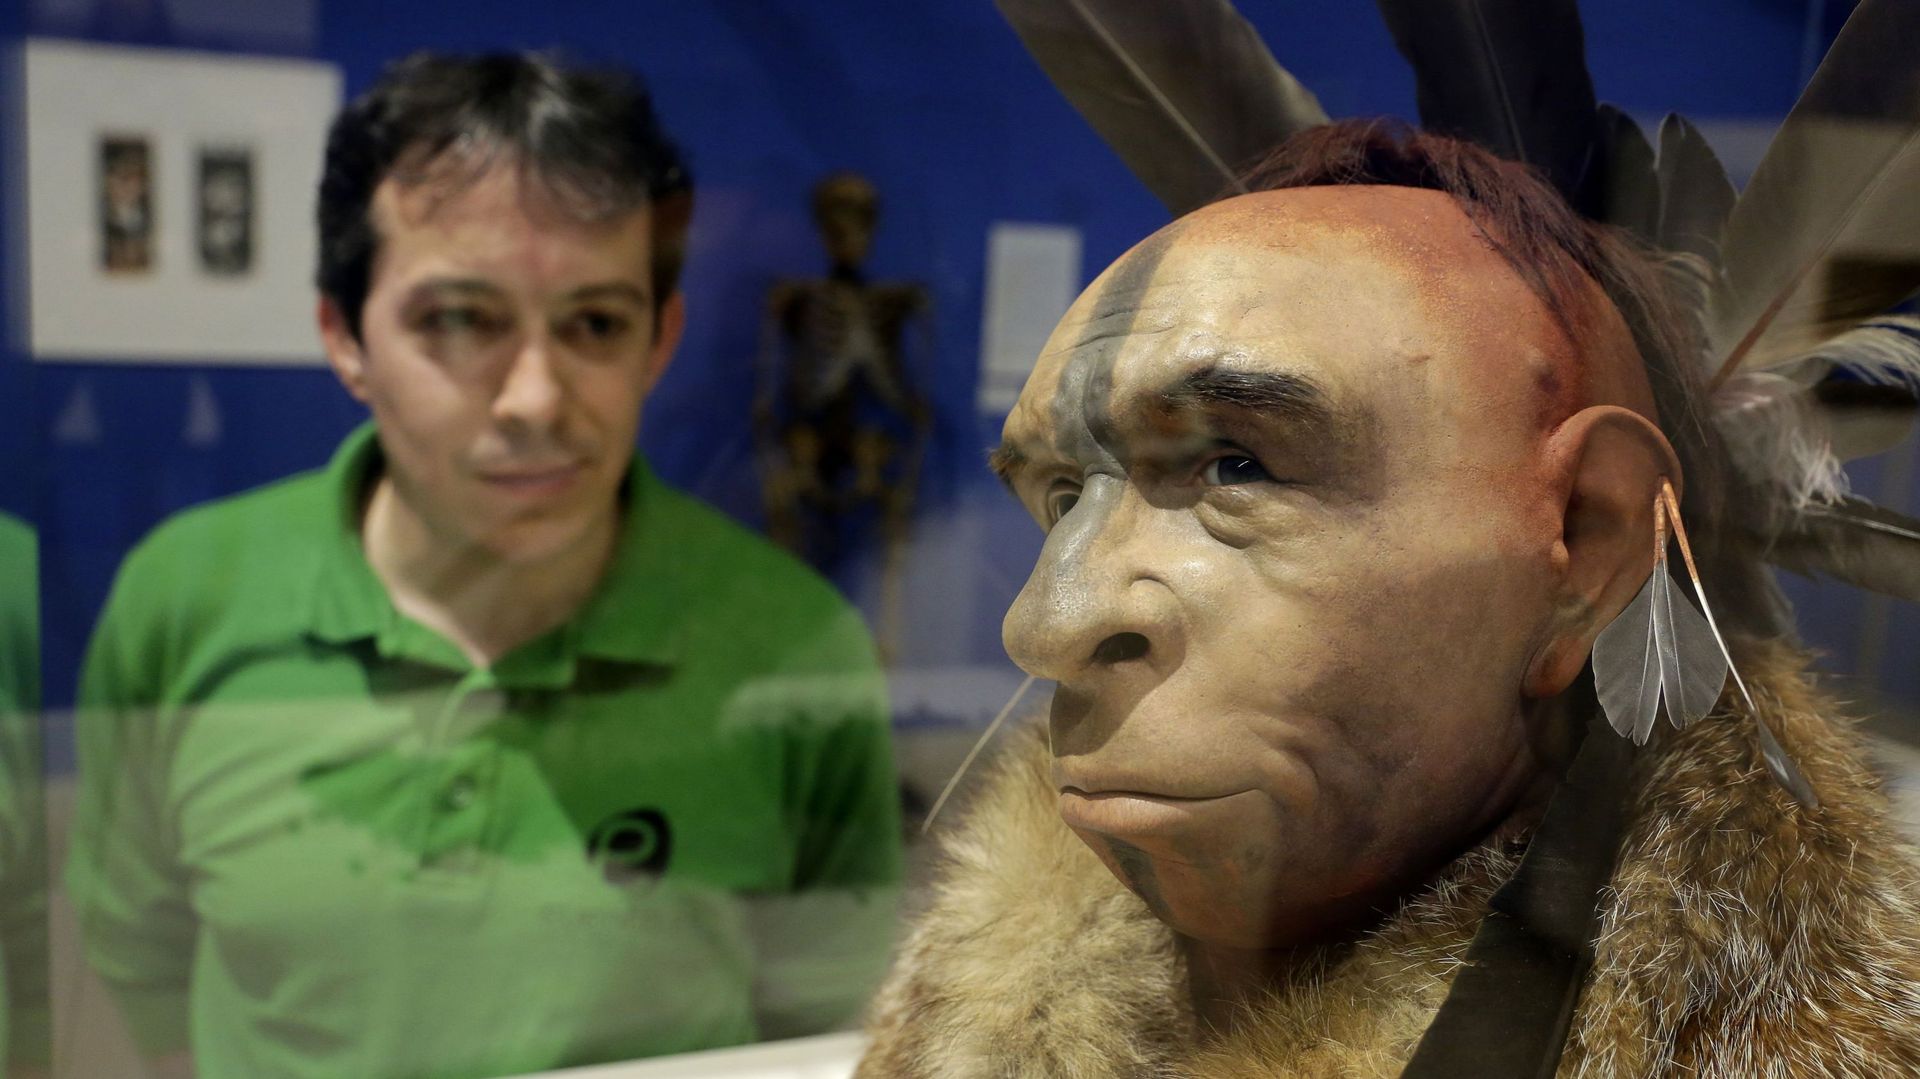 L'homme de Neandertal avait développé "l'oreille du surfeur" pour pêcher